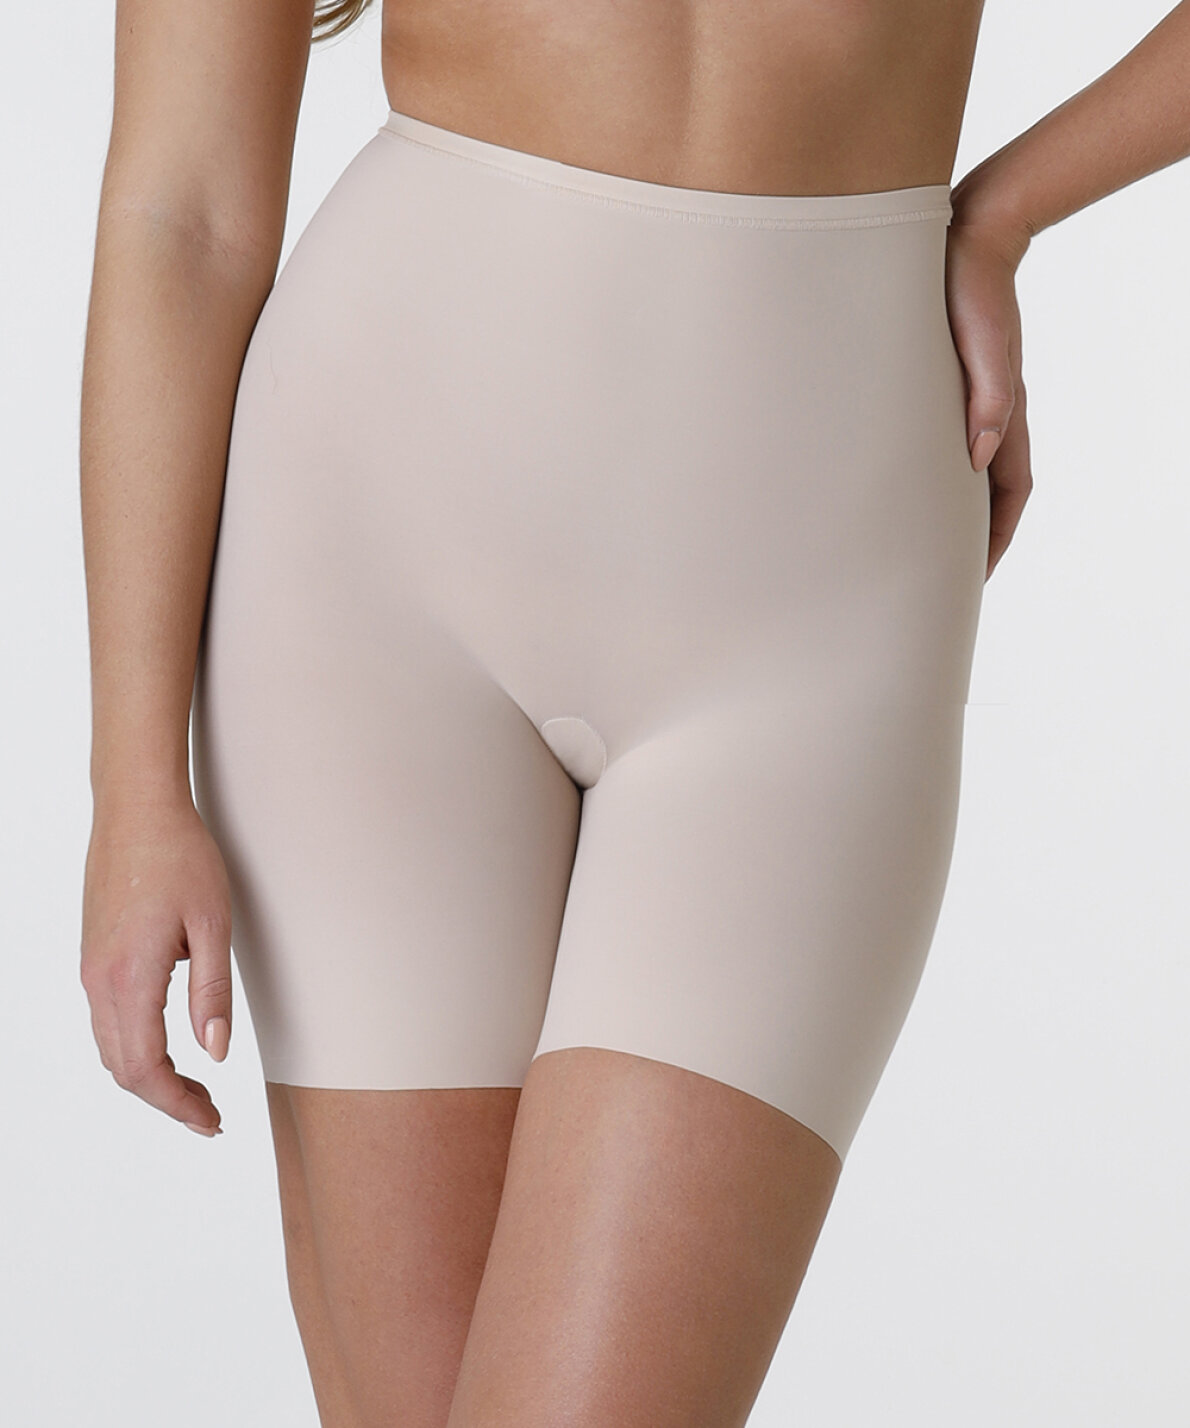 https://www.wunderwear.dk/shared/90/684/maidenform-sleek-smoothers-thigh-slimmer_1190x1428c.jpg